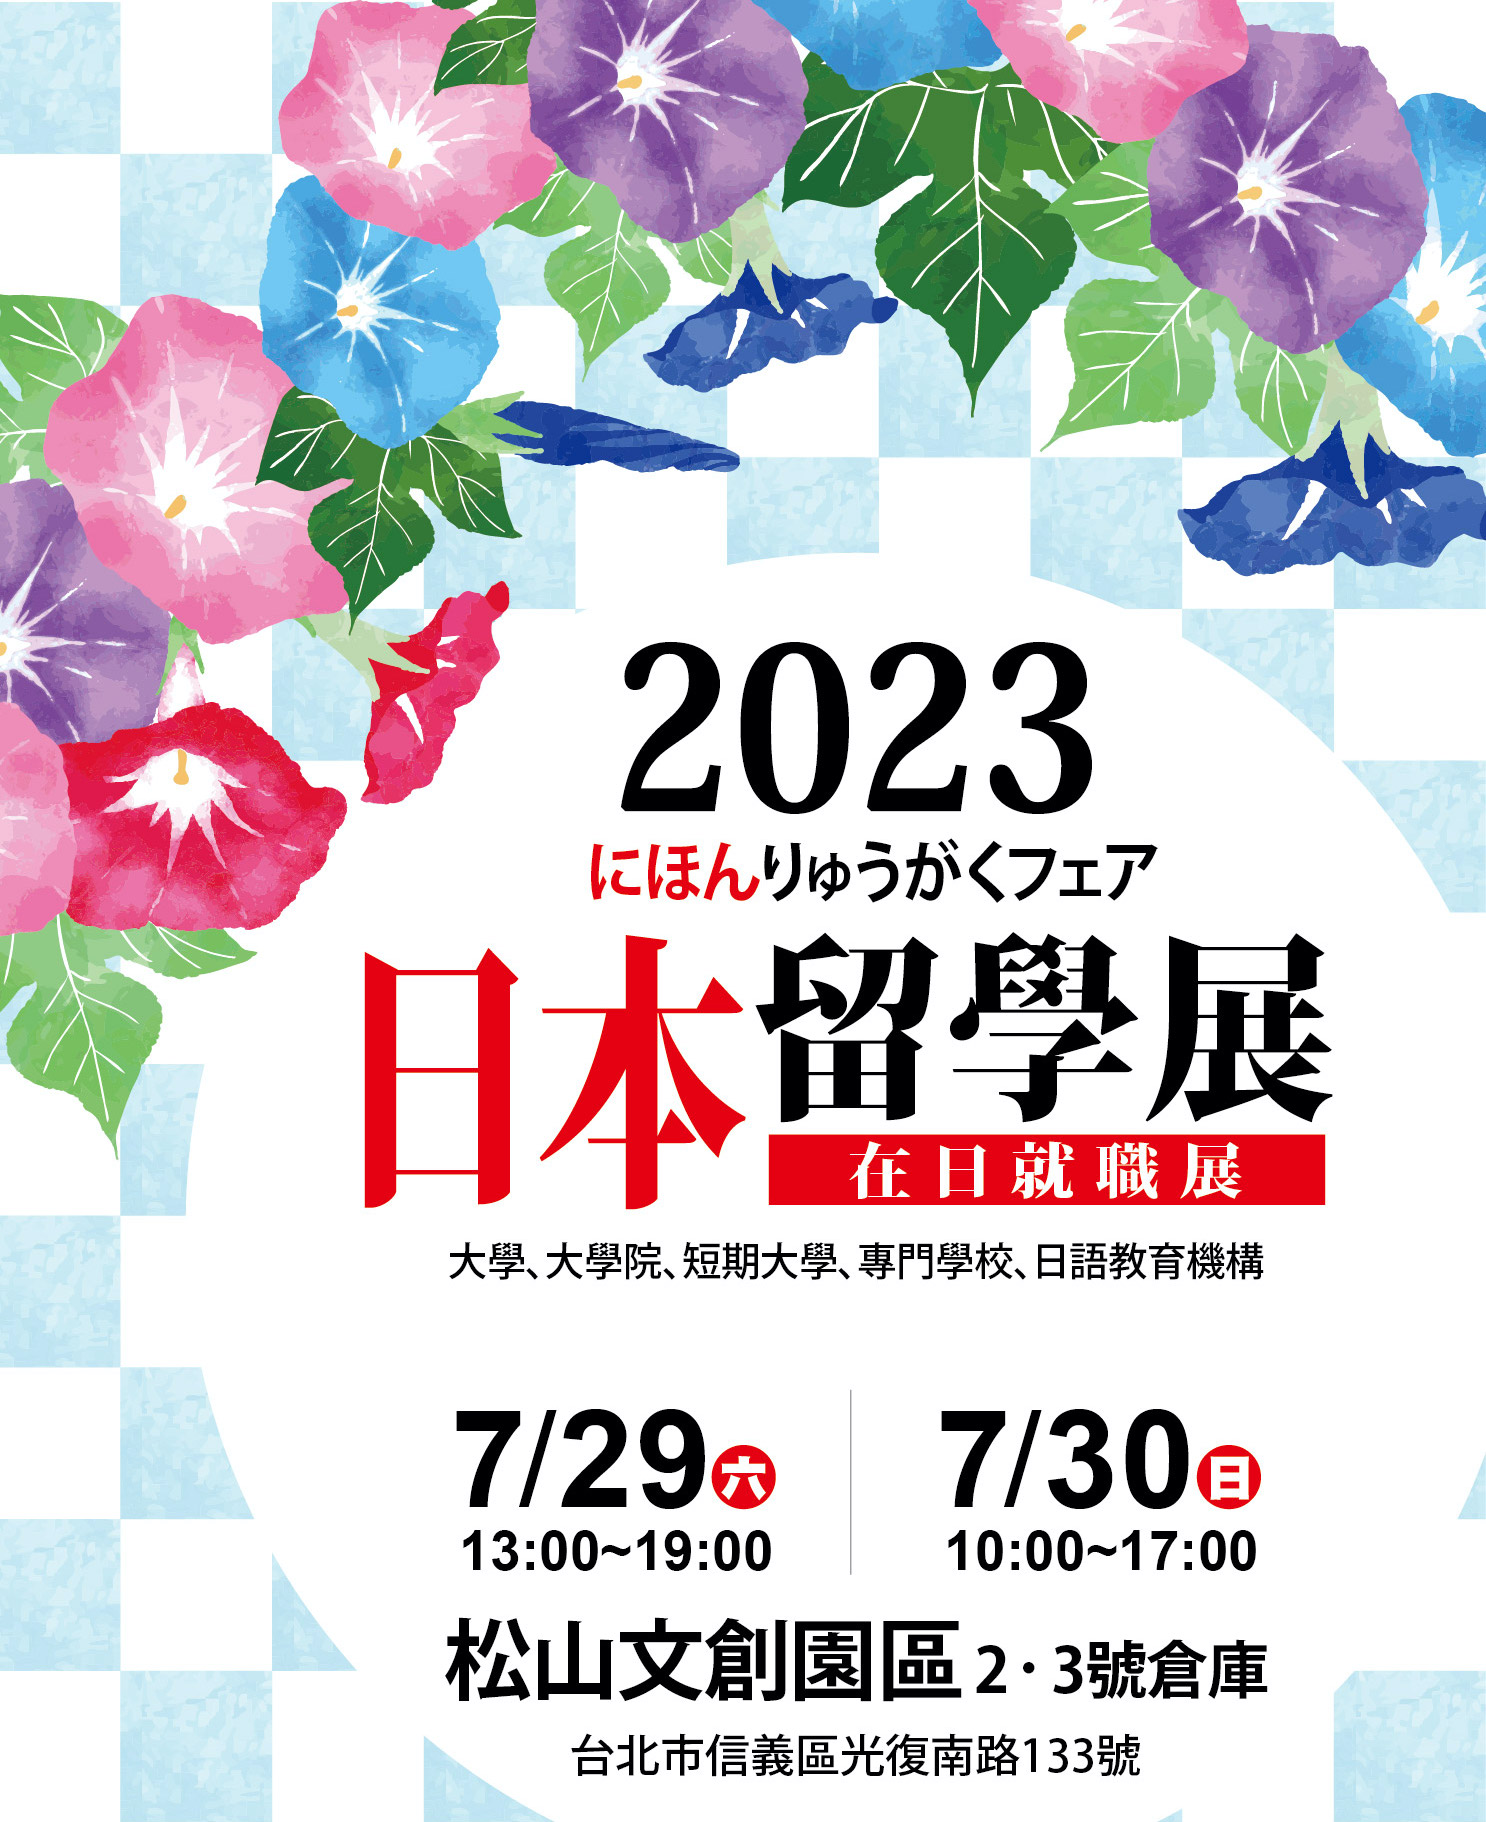 【轉發】2023日本留學展